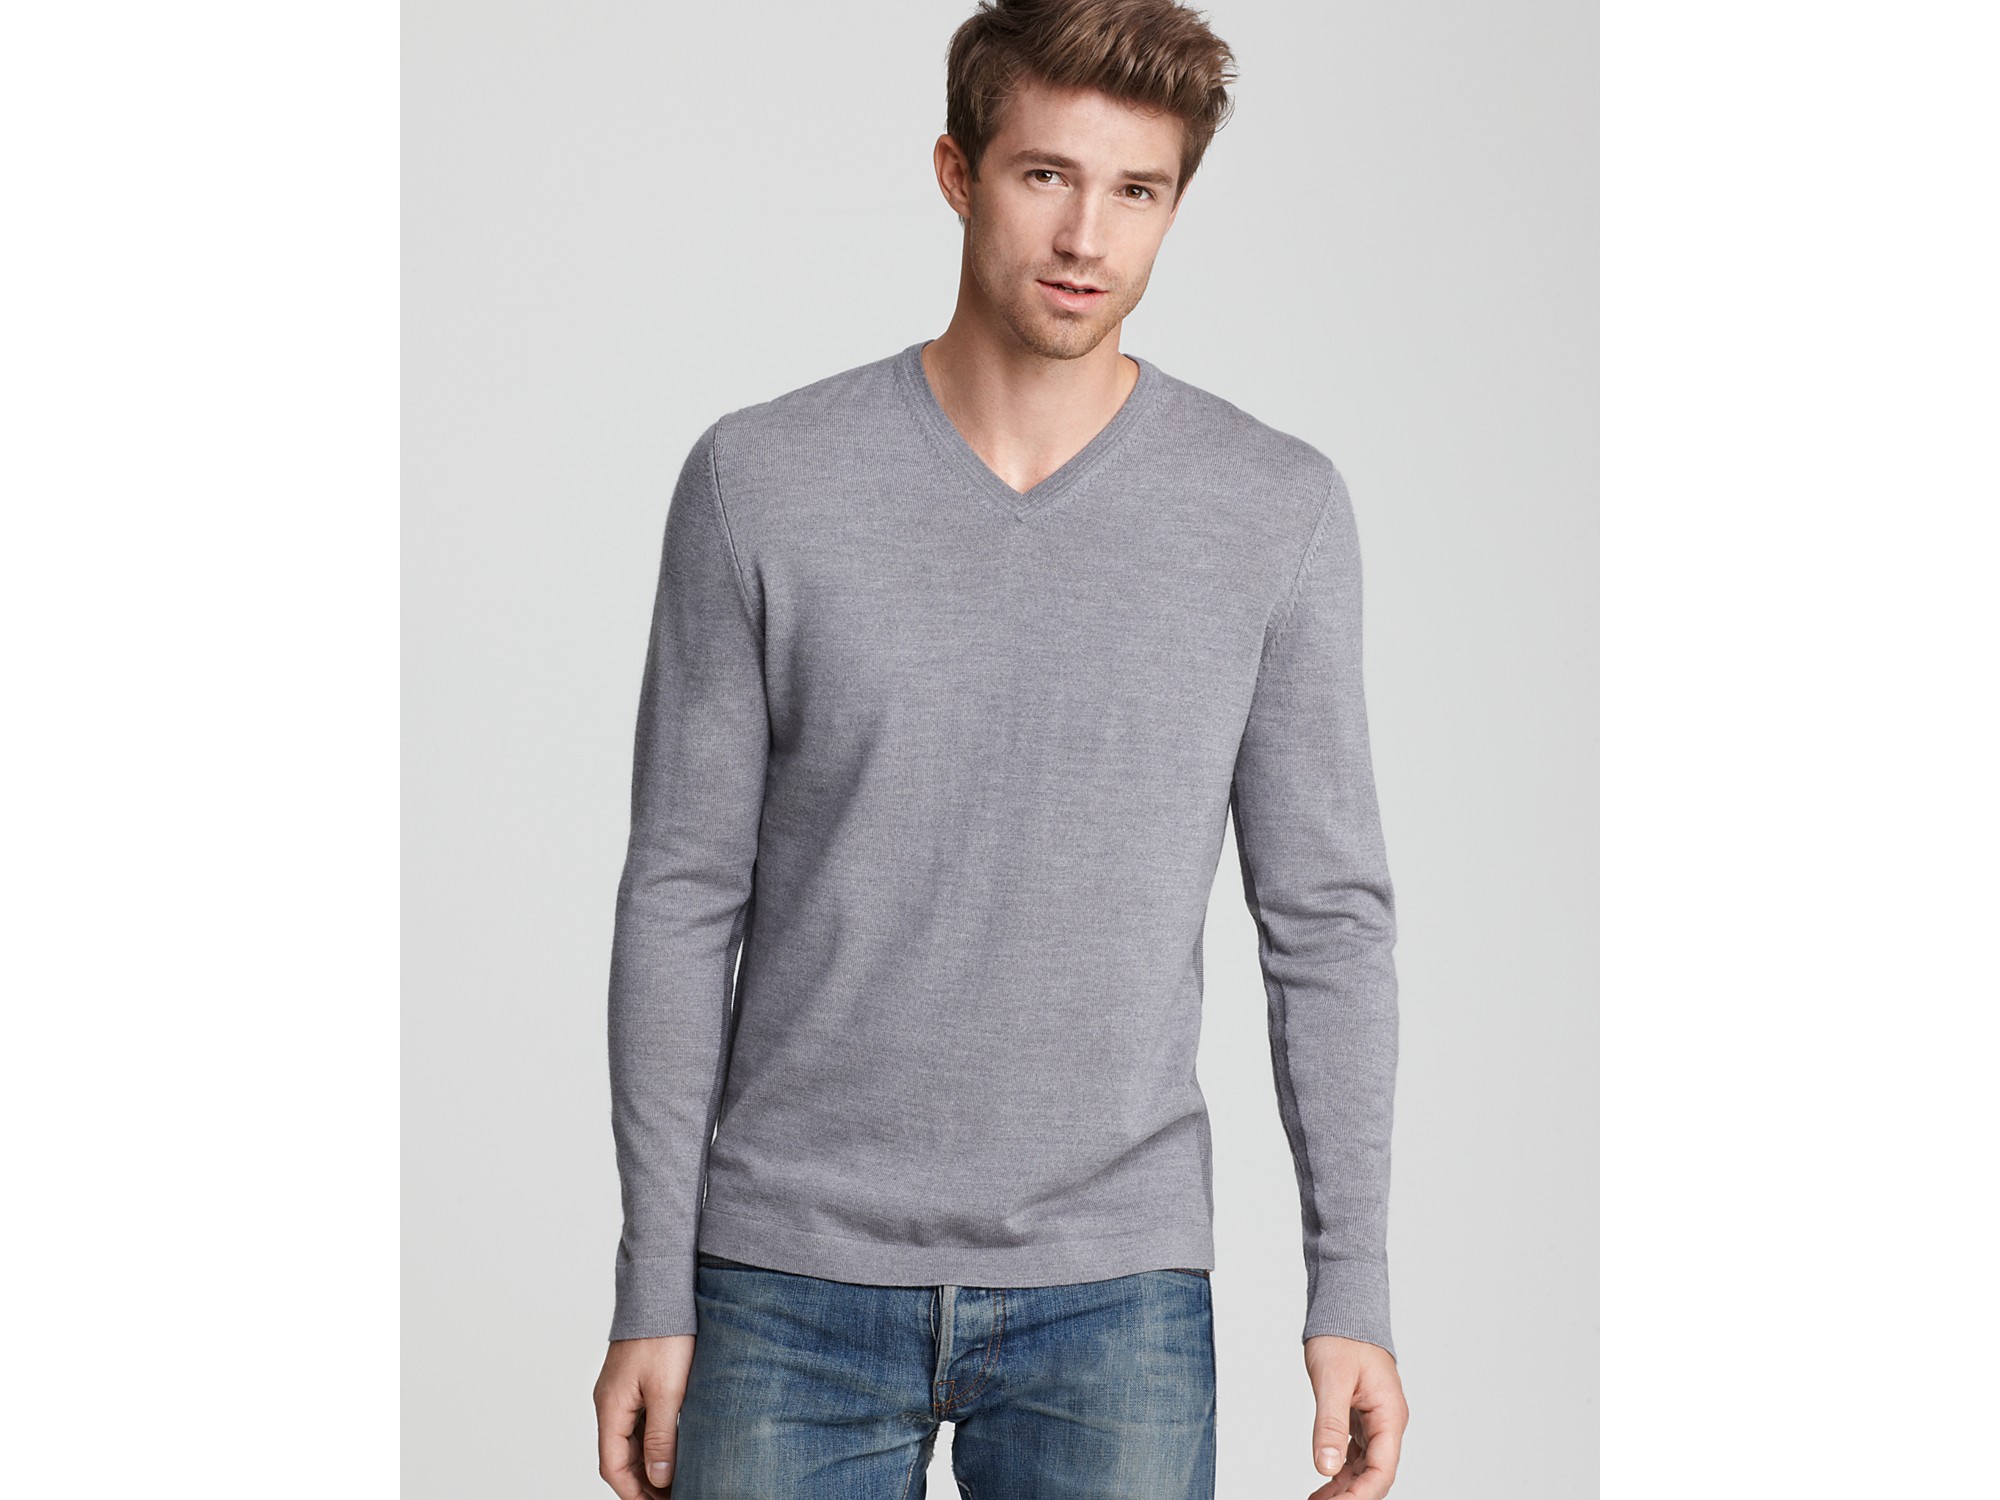 Lyst - Elie Tahari Bradley V Neck Merino Sweater in Gray for Men